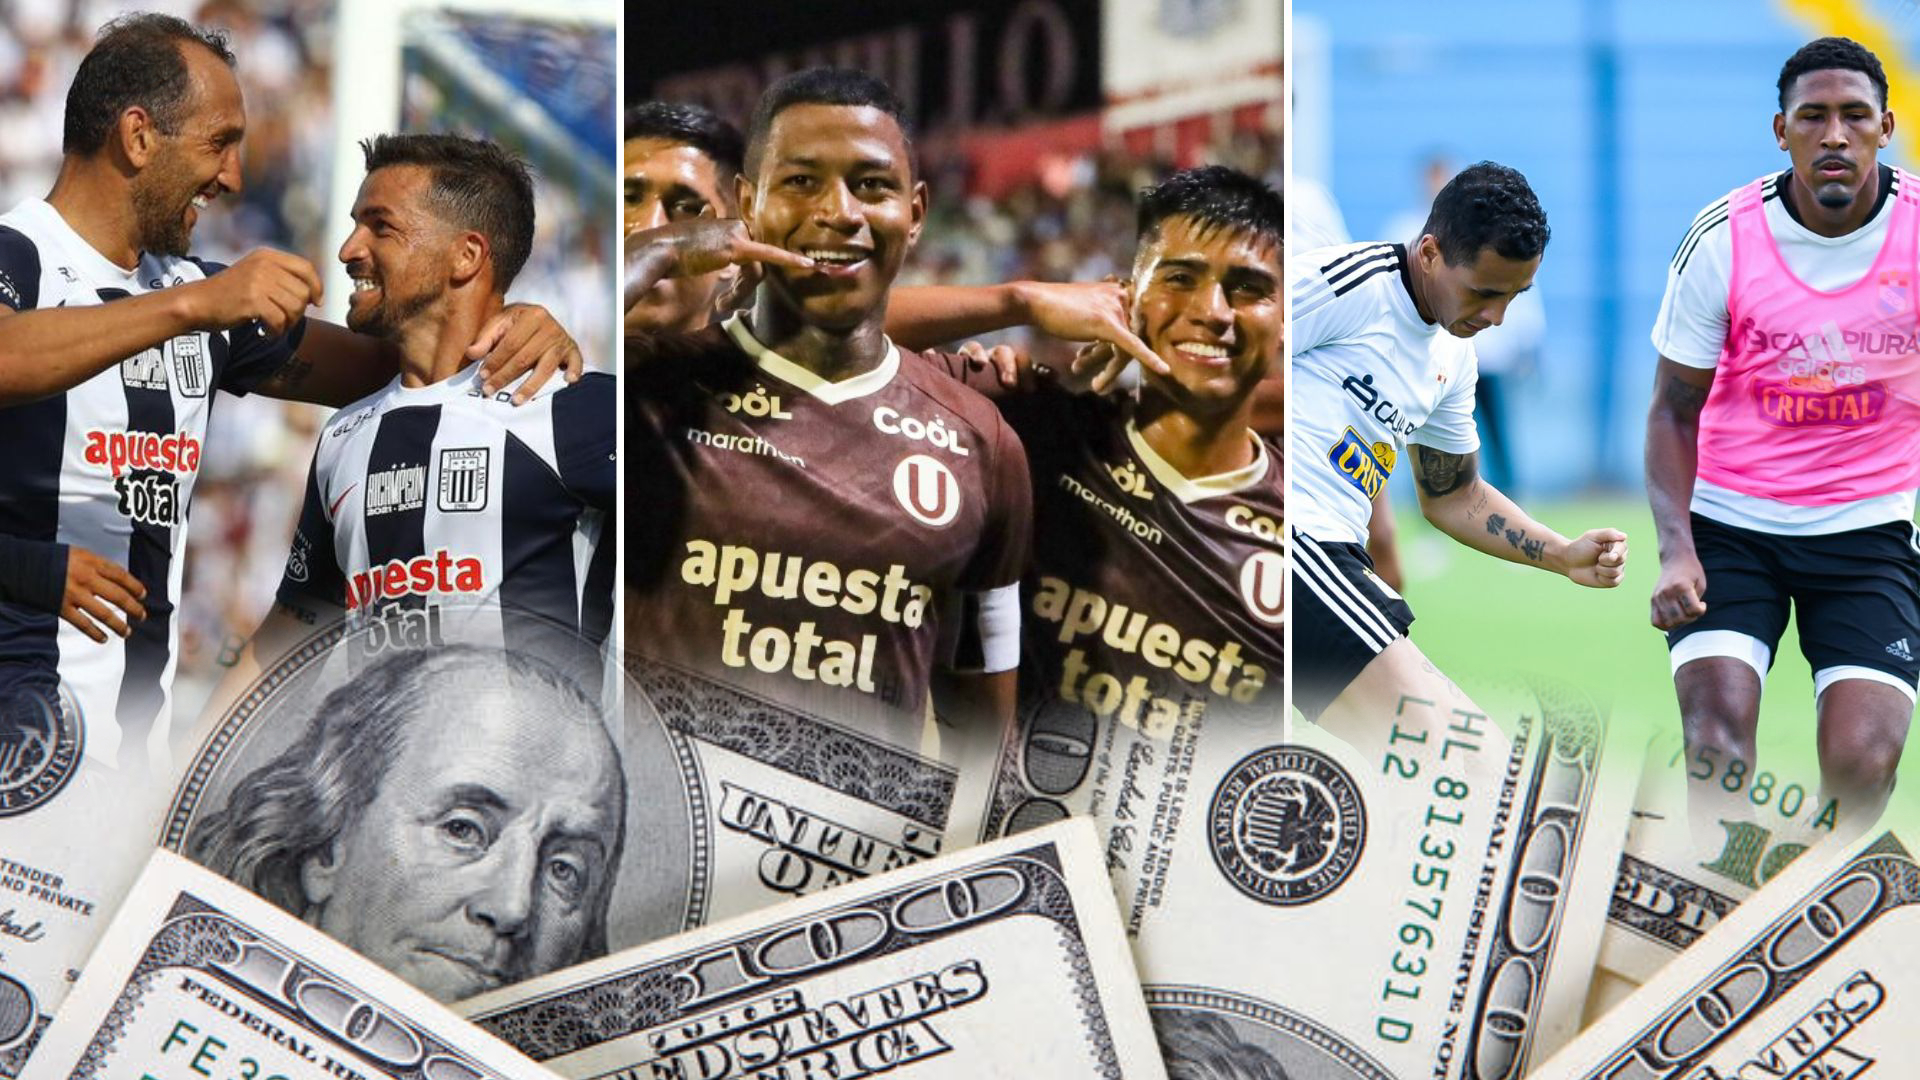 ¿Cuál es el club más caro de Perú